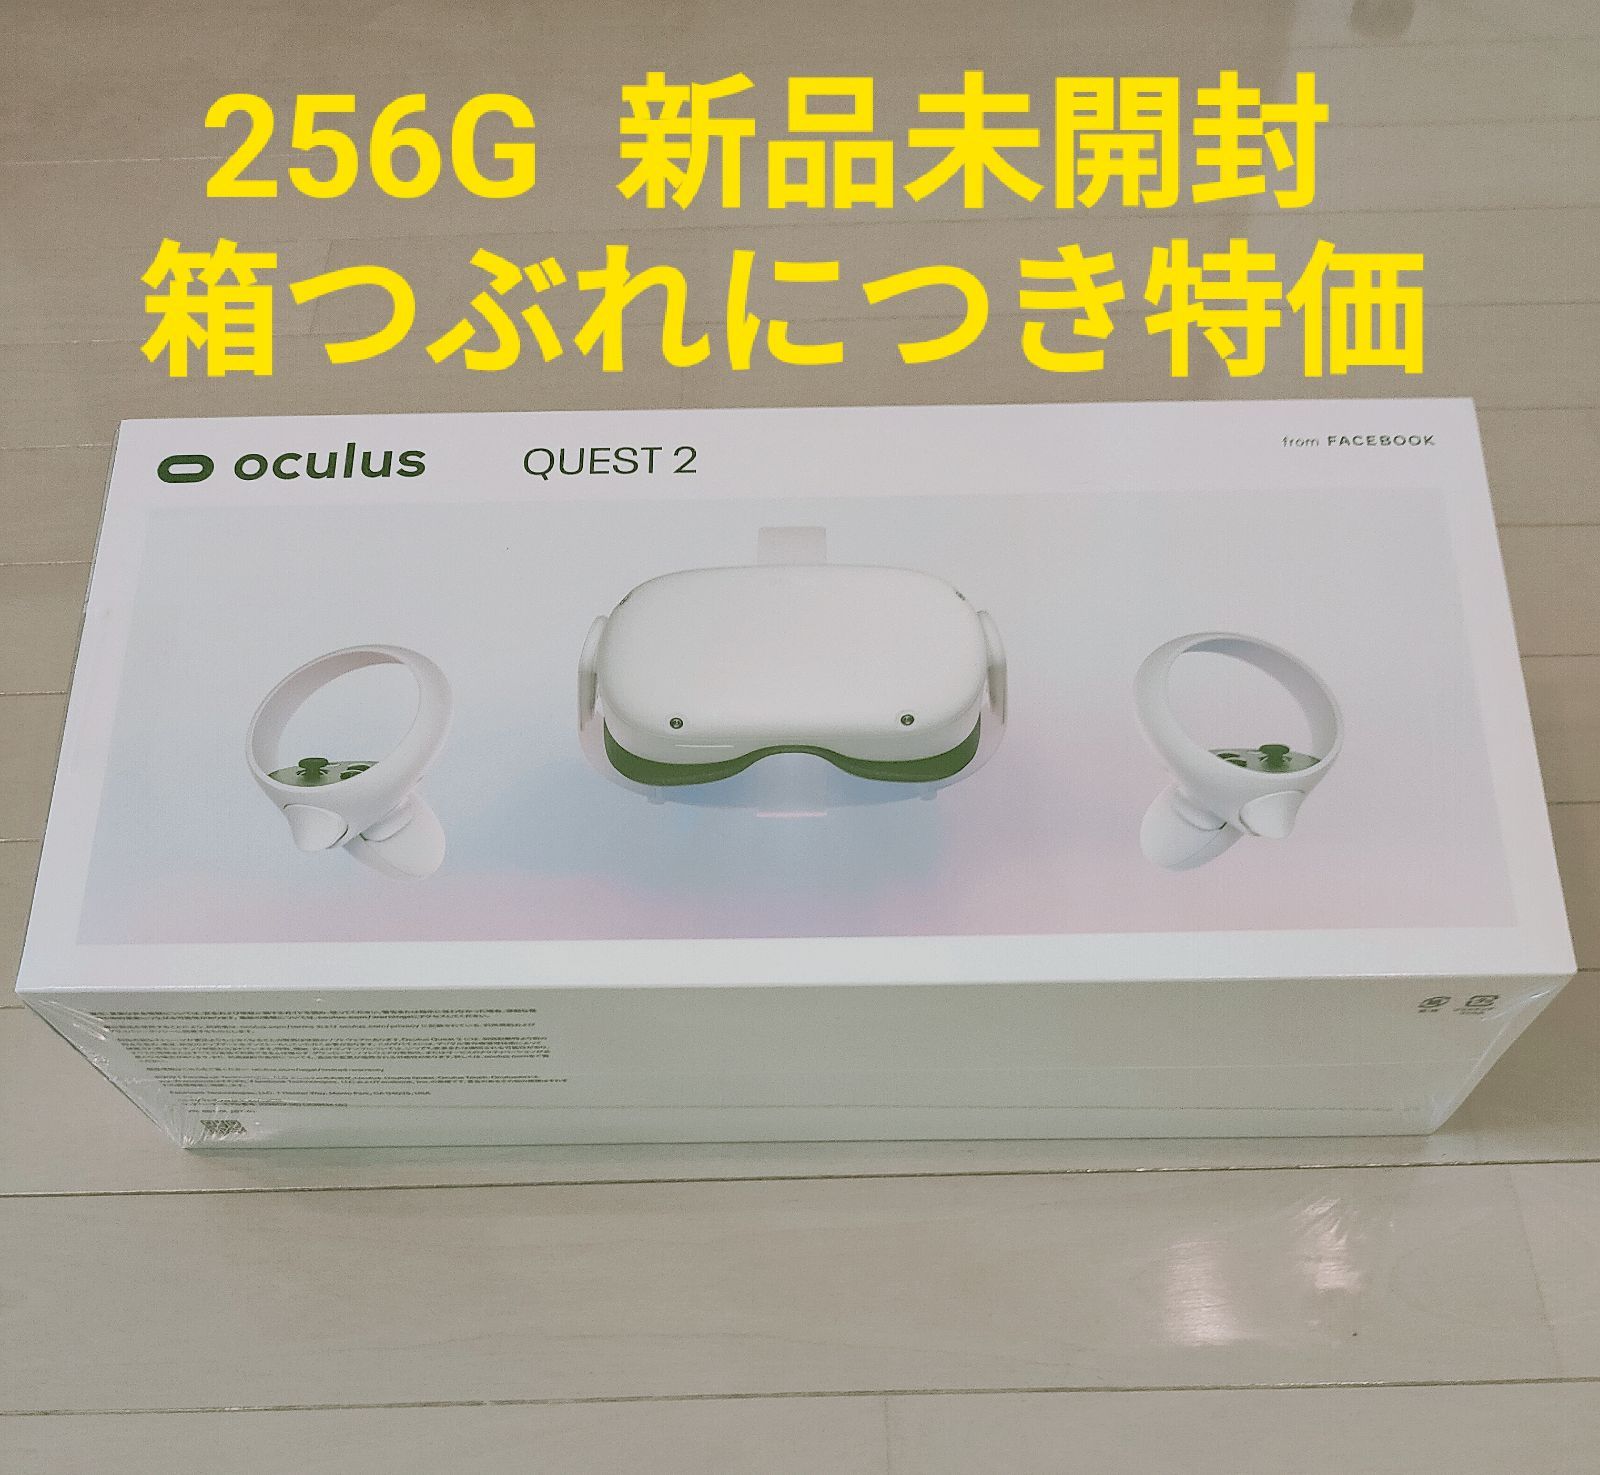 新品未開封・箱つぶれ】特価 Oculus Quest2 256GB - わたしの工房